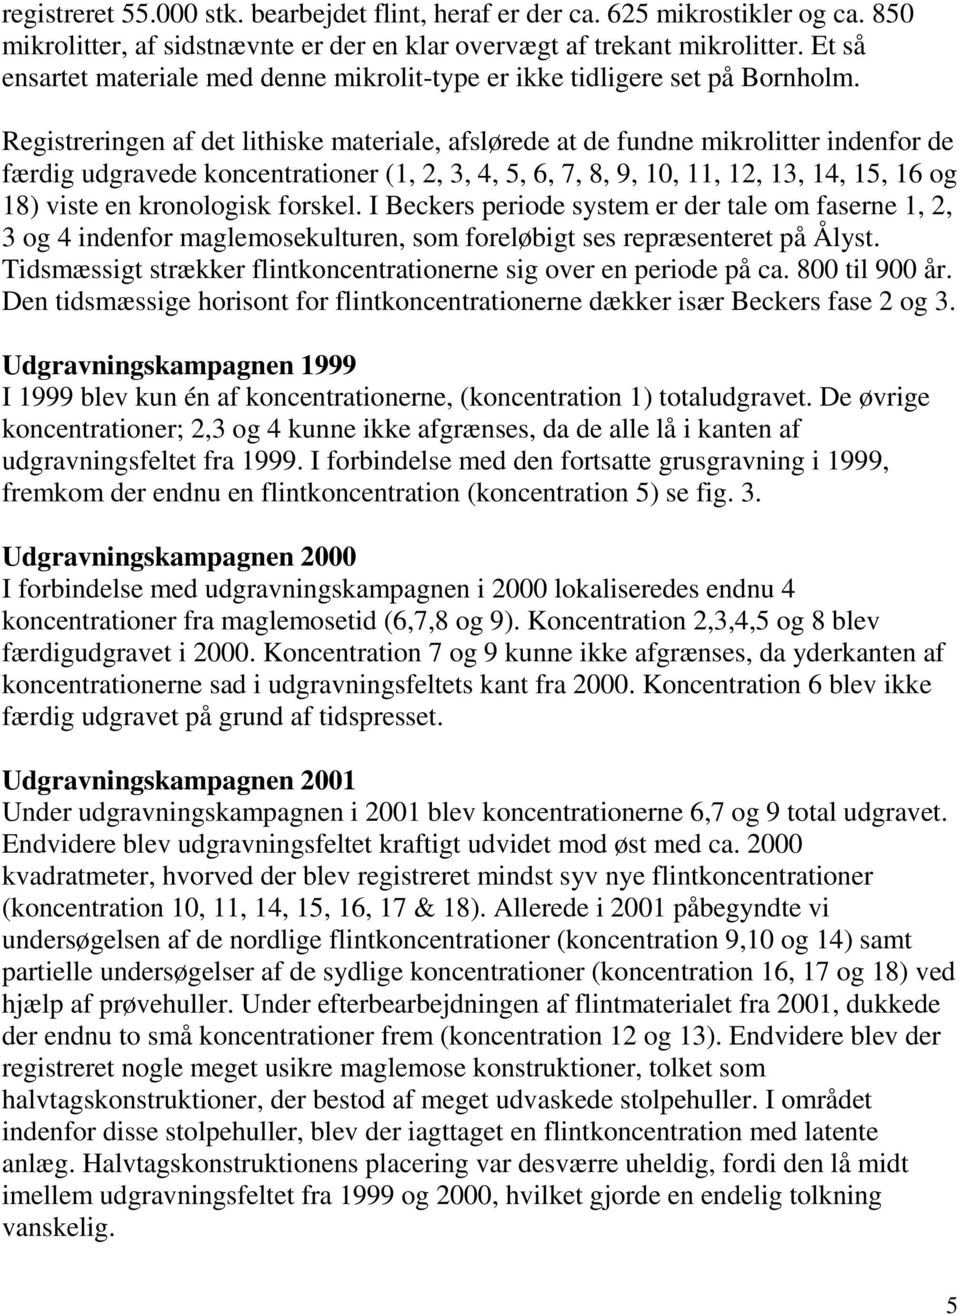 Registreringen af det lithiske materiale, afslørede at de fundne mikrolitter indenfor de færdig udgravede koncentrationer (1, 2, 3, 4, 5, 6, 7, 8, 9, 10, 11, 12, 13, 14, 15, 16 og 18) viste en